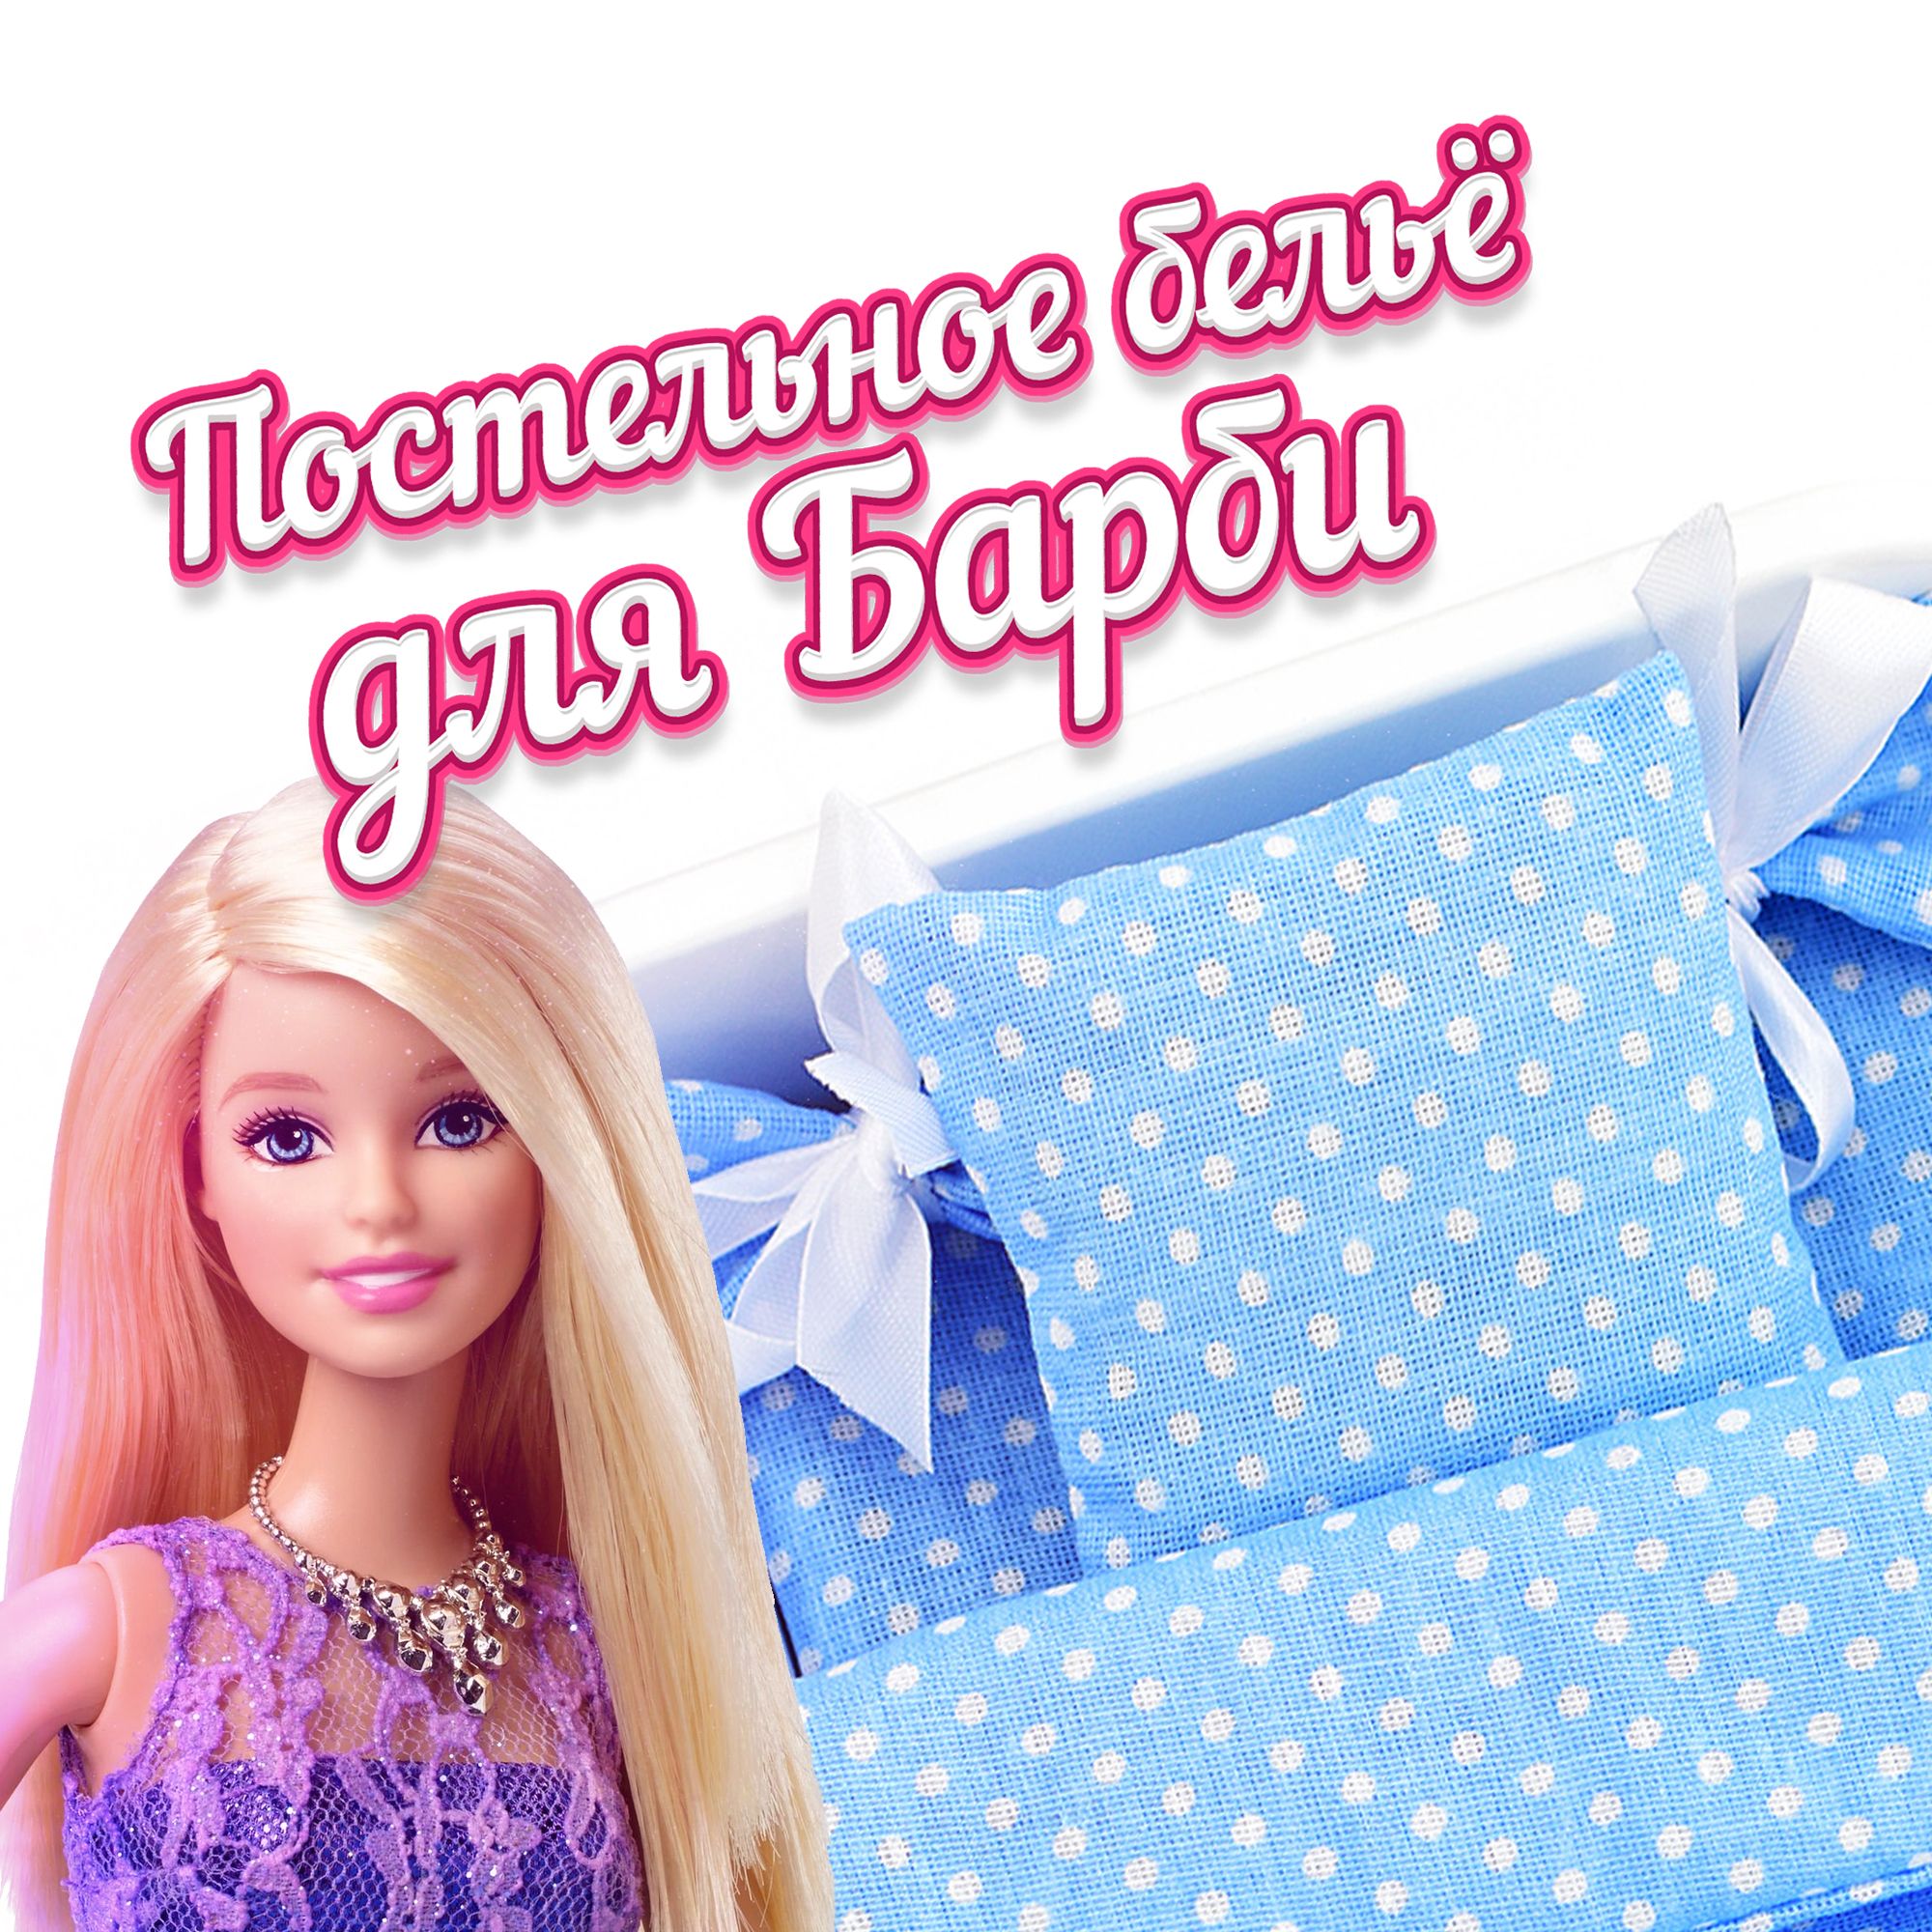 9 марта кукле Барби исполнилось 60 лет. В Краснотурьинске живет одна из ее почитательниц